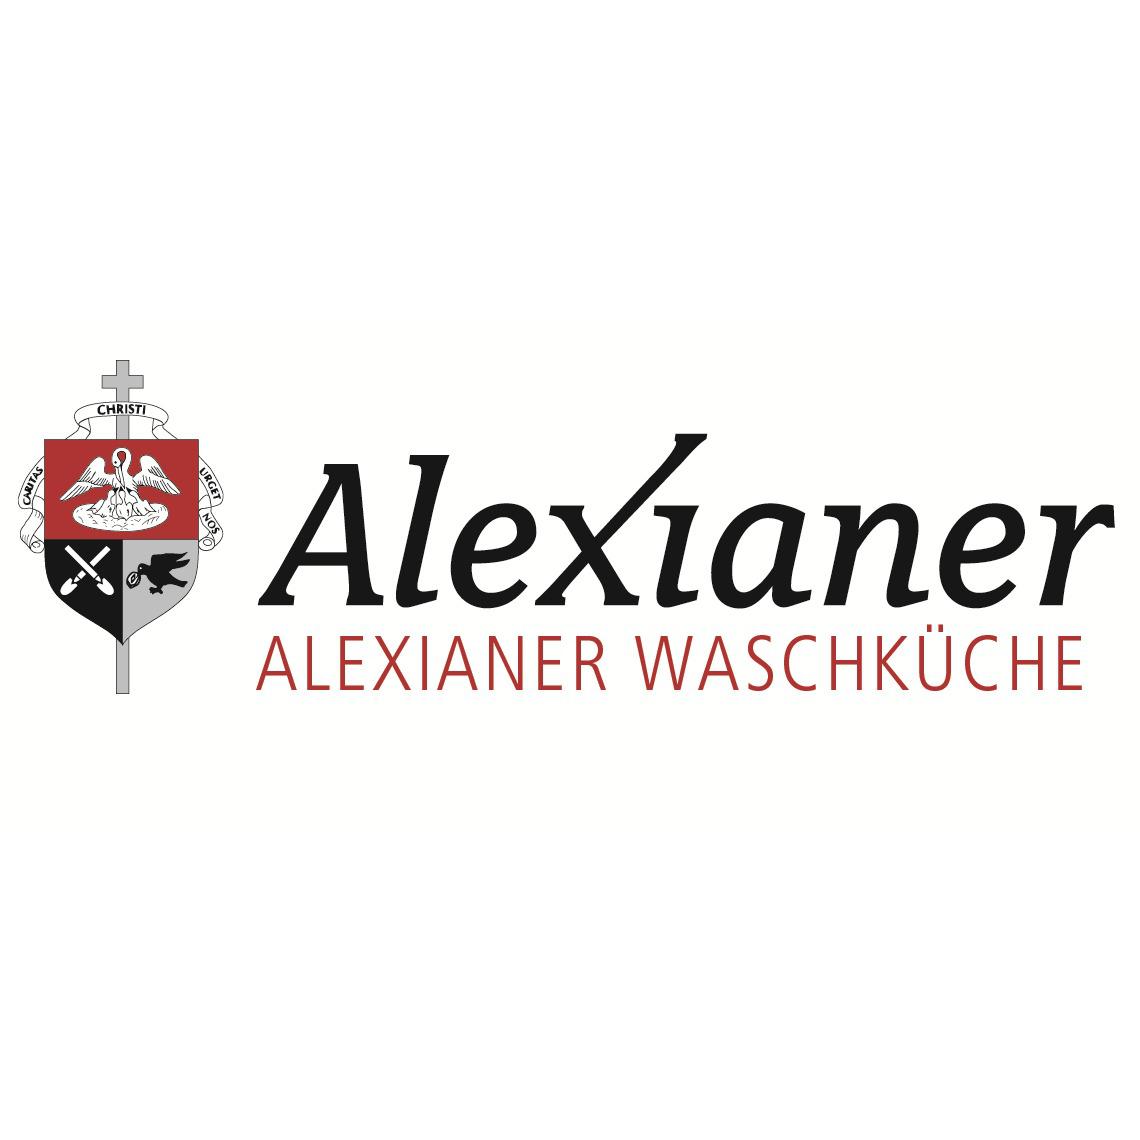 Alexianer Waschküche in Münster - Logo